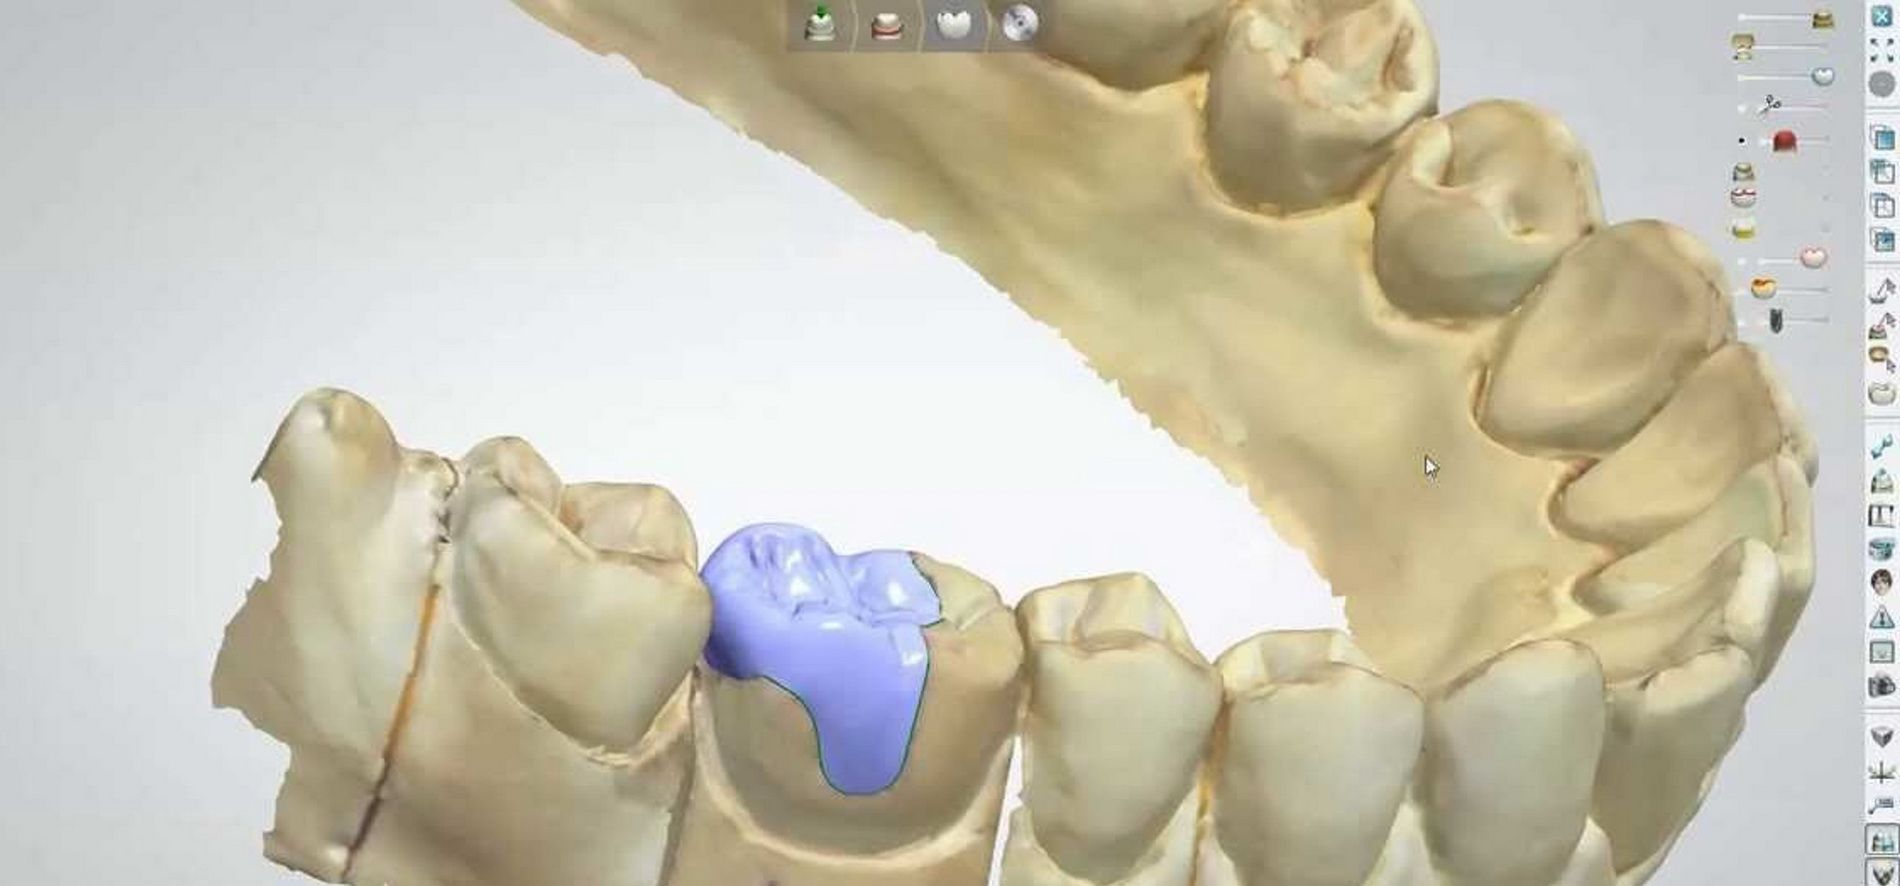 El sistema CEREC 3D de CAD-CAM dental permet confeccionar restauracions dentals amb una precisió d'ajust de 30 micres.